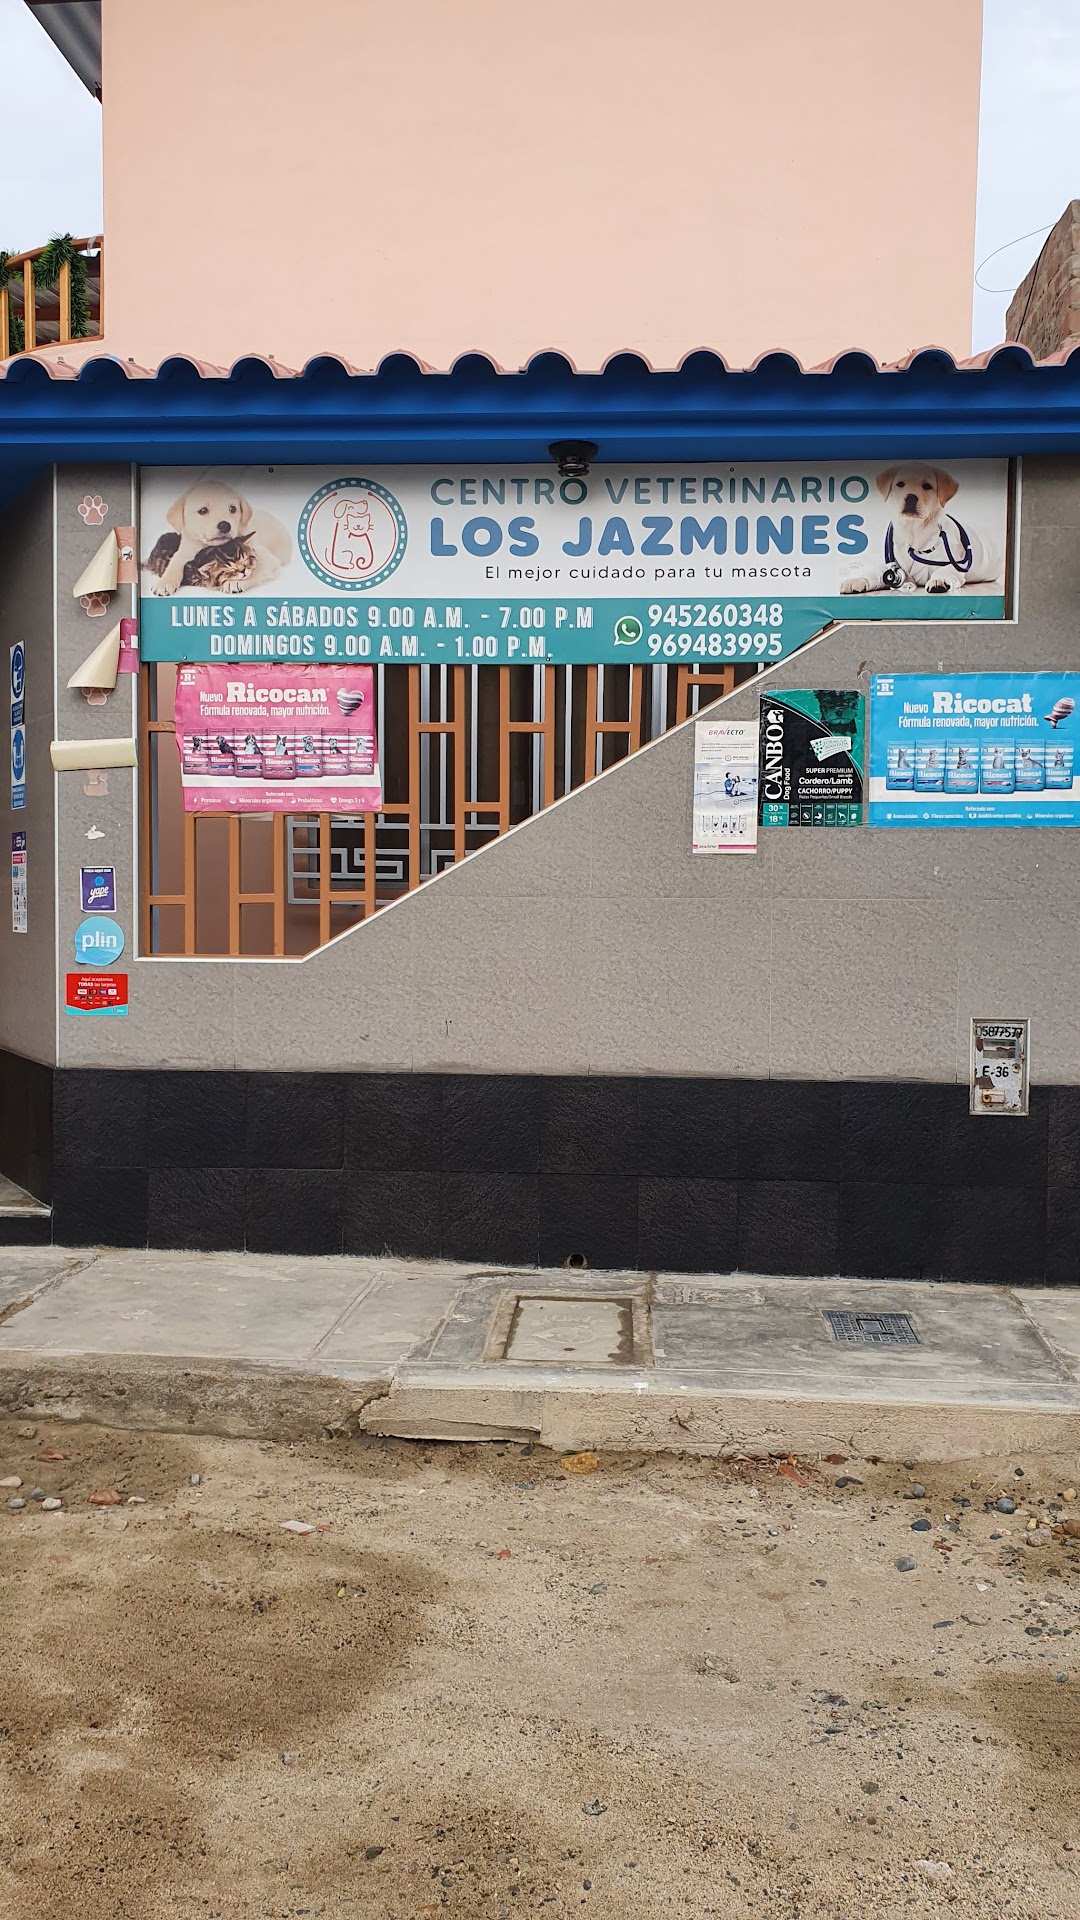 Centro Veterinario Los Jazmines